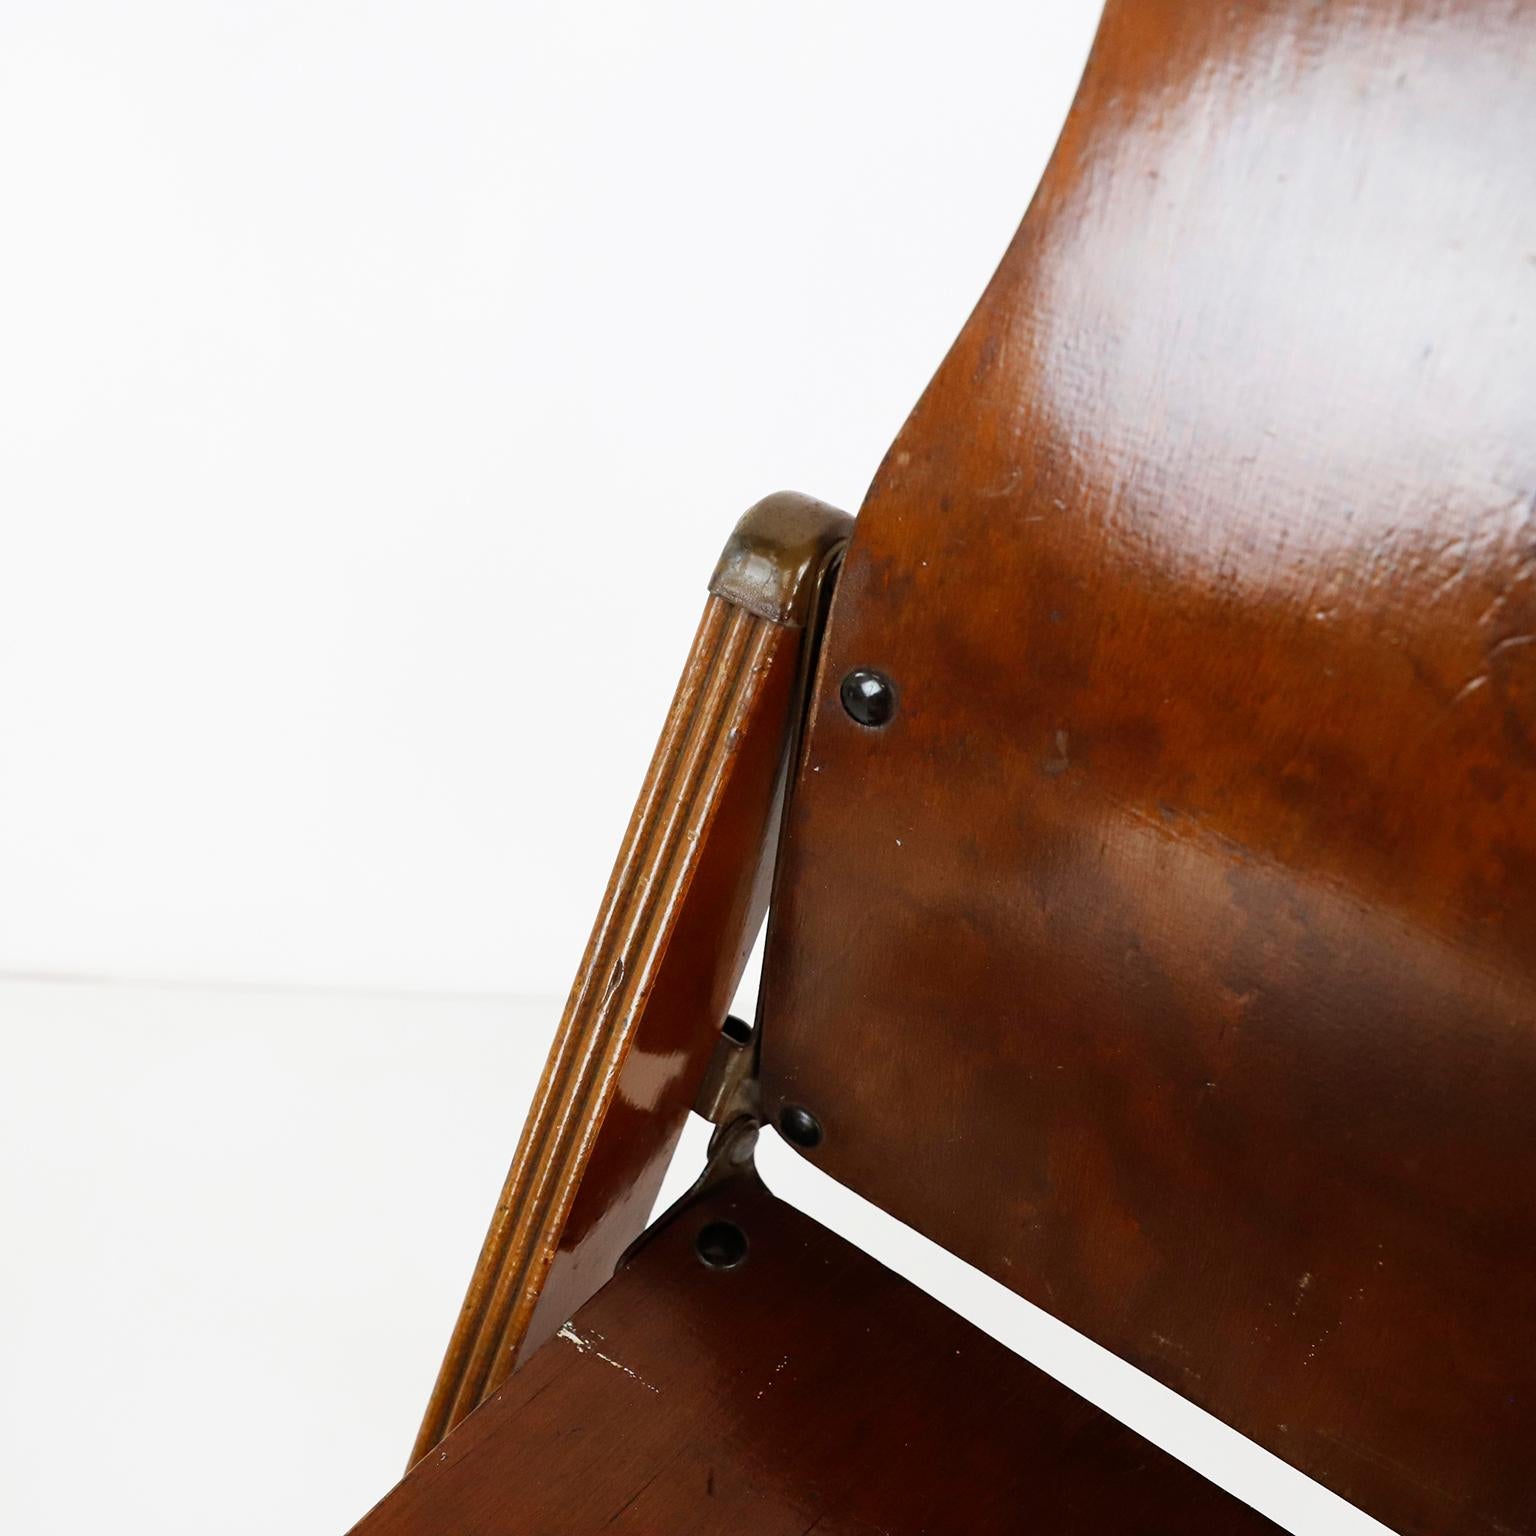 vers 1940. Nous vous proposons cette magnifique chaise pliante fabriquée par American Seating Company, Grand Rapids Michigan.
Des chaises utilitaires fantastiques qui se replient astucieusement pour être rangées.
Fabriquées pour l'armée